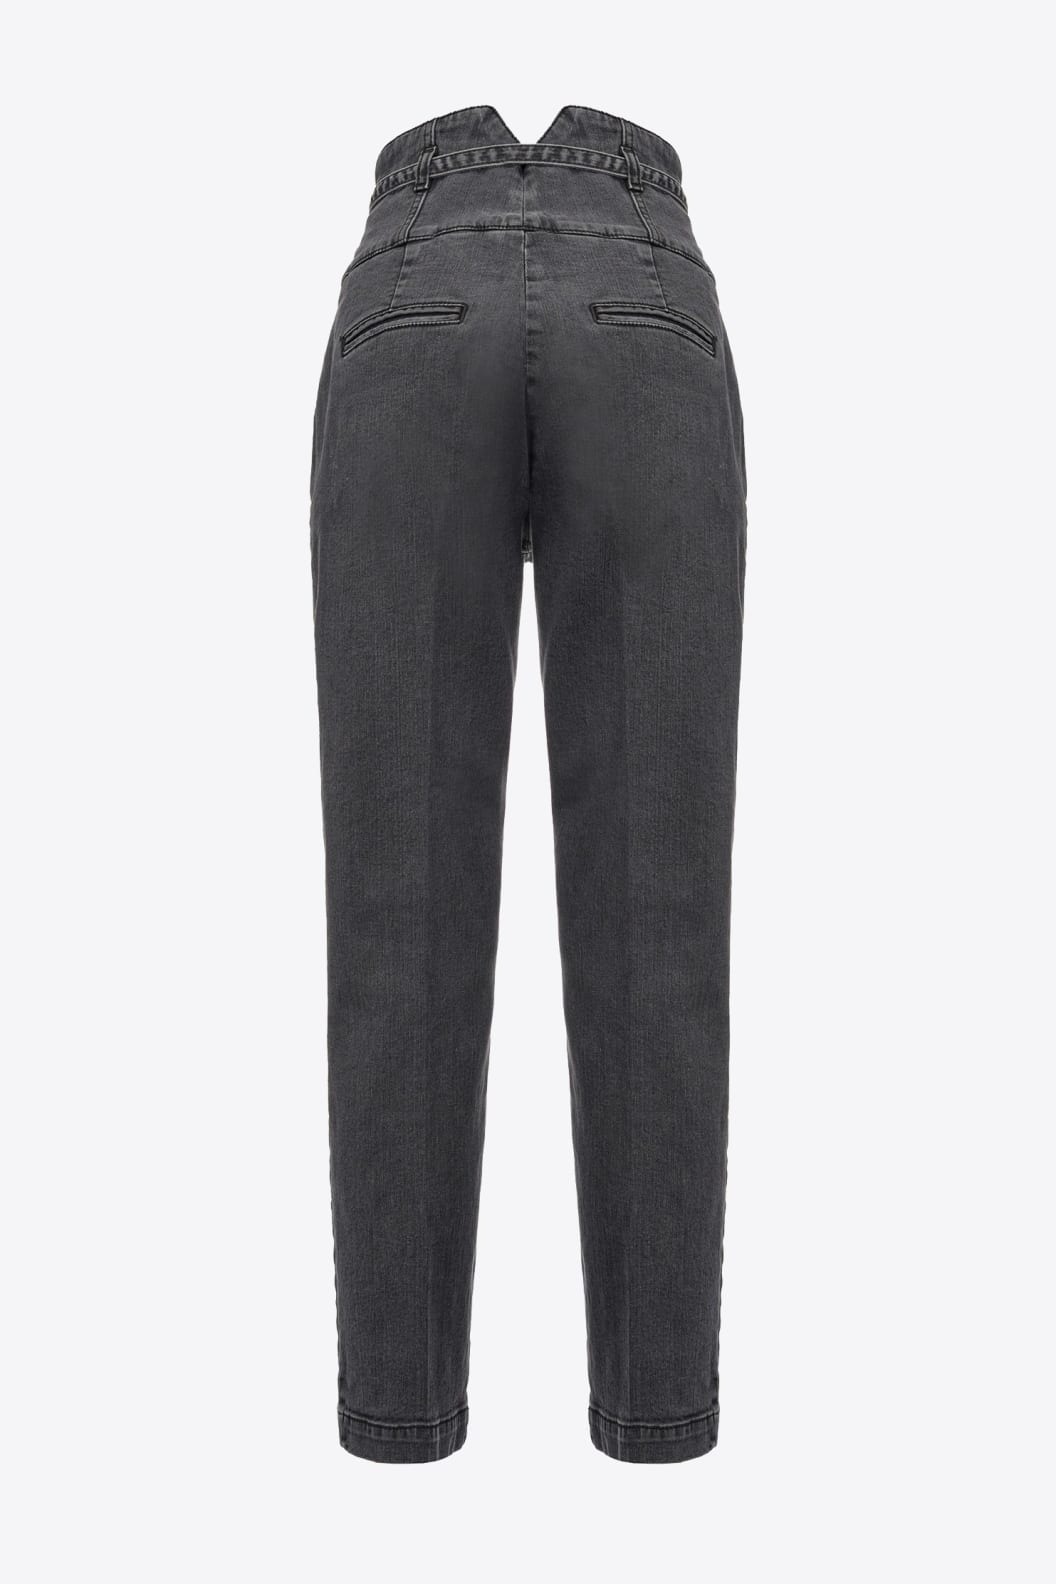 Pinko - ARIEL I90 - Jeans hoge taille riempje dark grey